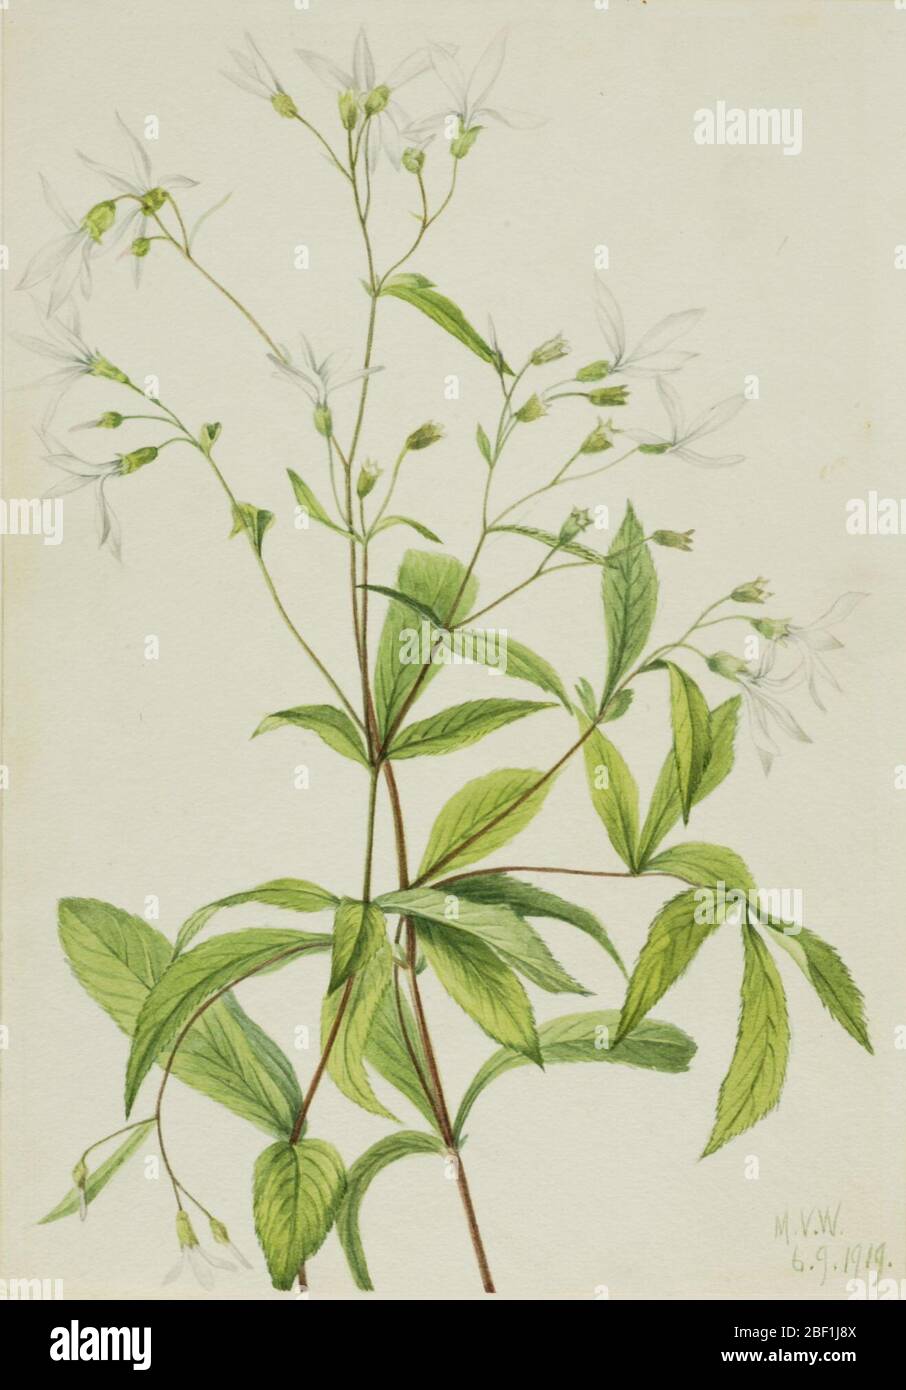 Bowmansroot Porteranthus trifoliatus. Stock Photo